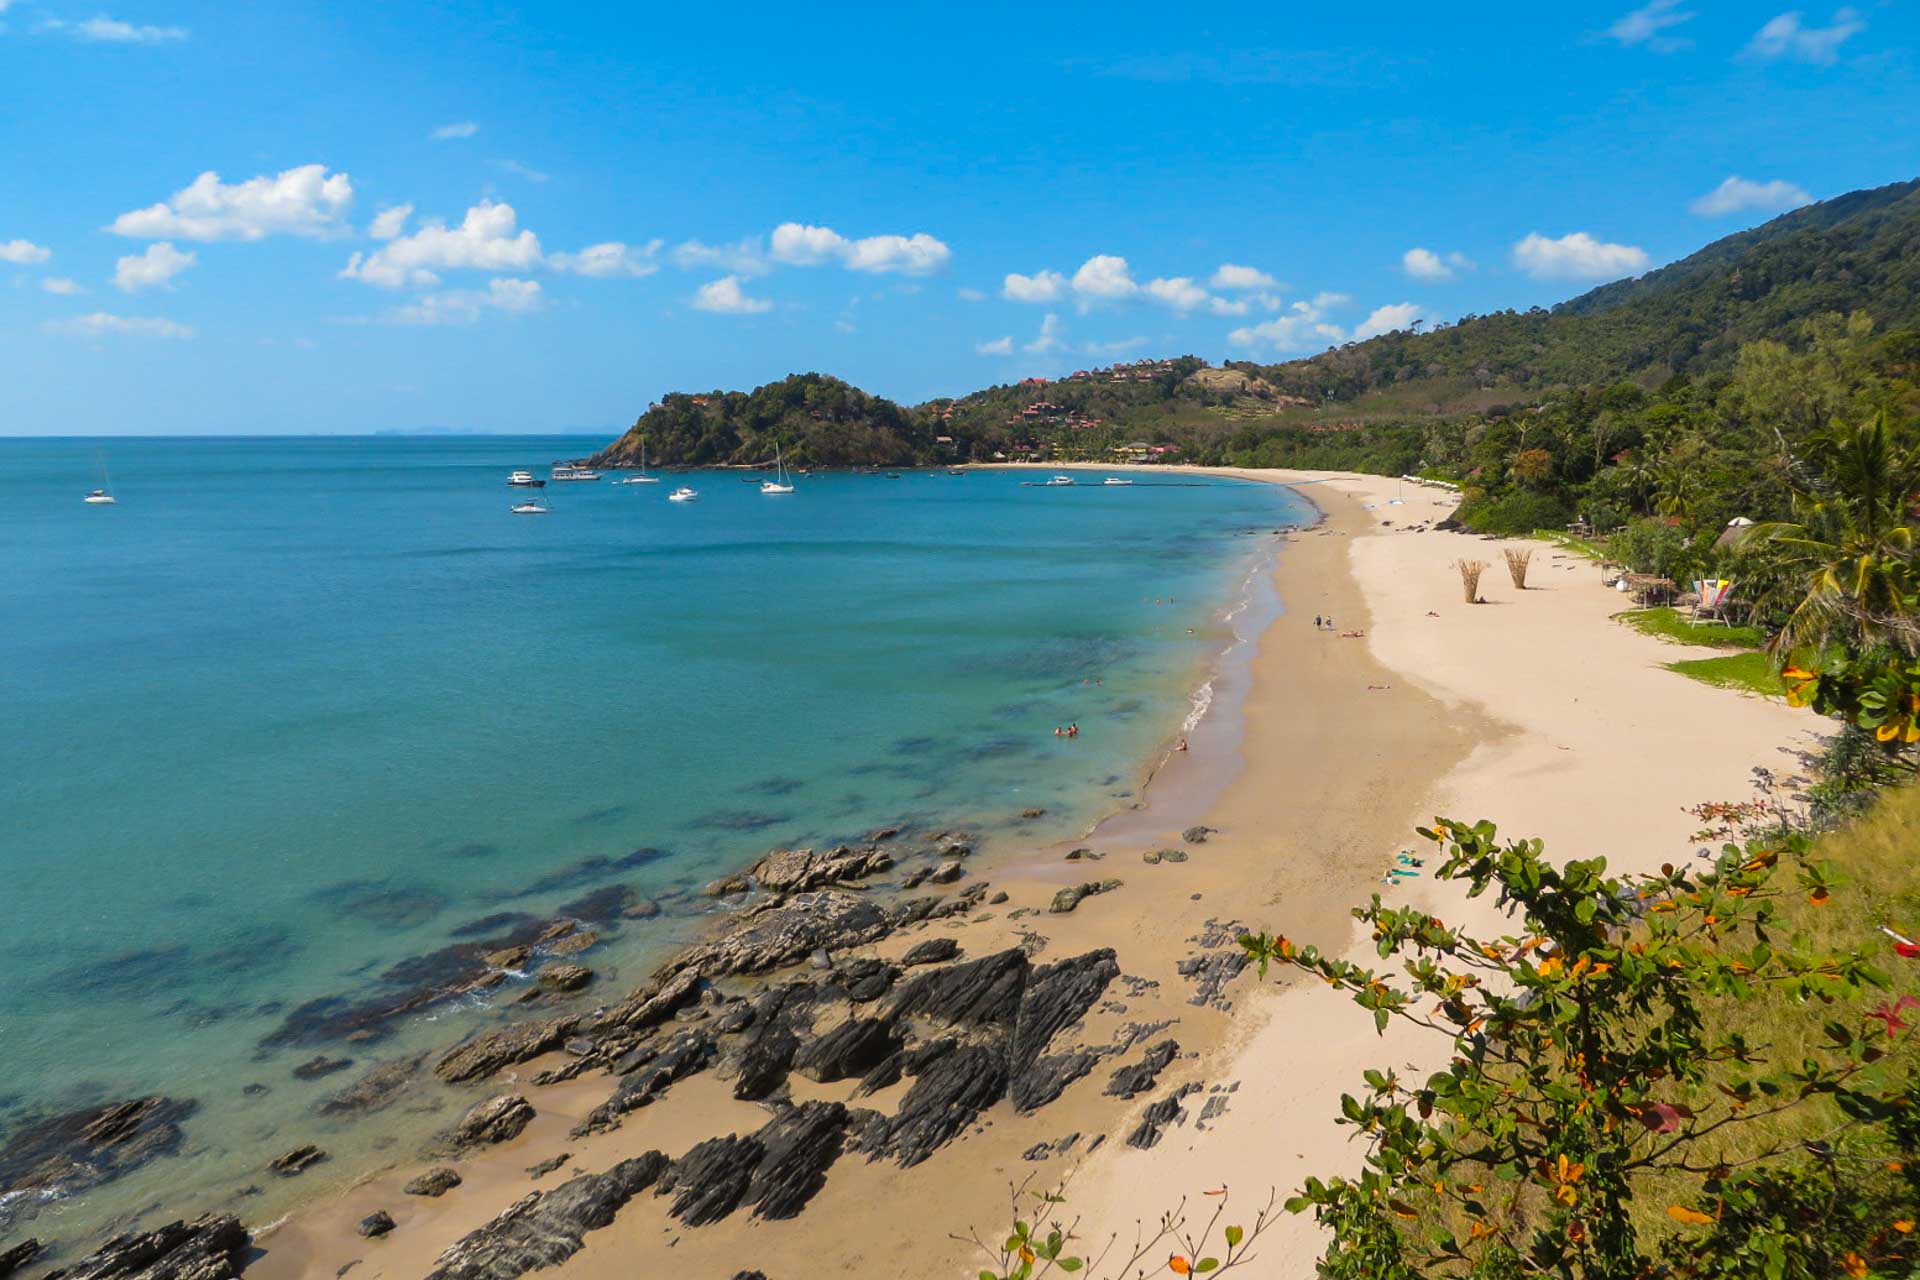 Koh Lanta thường là sự lựa chọn của các khách du lịch lứa tuổi trung và cao tuổi, tránh xa sự náo nhiệt, hoạt bát và ồn ào của các du khách trẻ để giữ gìn những bãi biển thư giãn đúng nghĩa. Không có núi đá vôi, không có những rặng san hô sát biển nhưng các bãi biển ở đây đều mang vẻ đẹp của riêng mình.   Koh Lanta là một trong những hòn đảo lớn nhất Thái Lan, có vị trí ở biển Andaman. So với Phuket hay đảo Koh Phi Phi thì diện tích của Koh Lanta khá khiêm tốn, chỉ khoảng 81km2 (gần tương tự với Côn Đảo của Việt Nam), vì vậy các hoạt động về đêm chưa thực sự phổ biến tại Koh Lanta. 